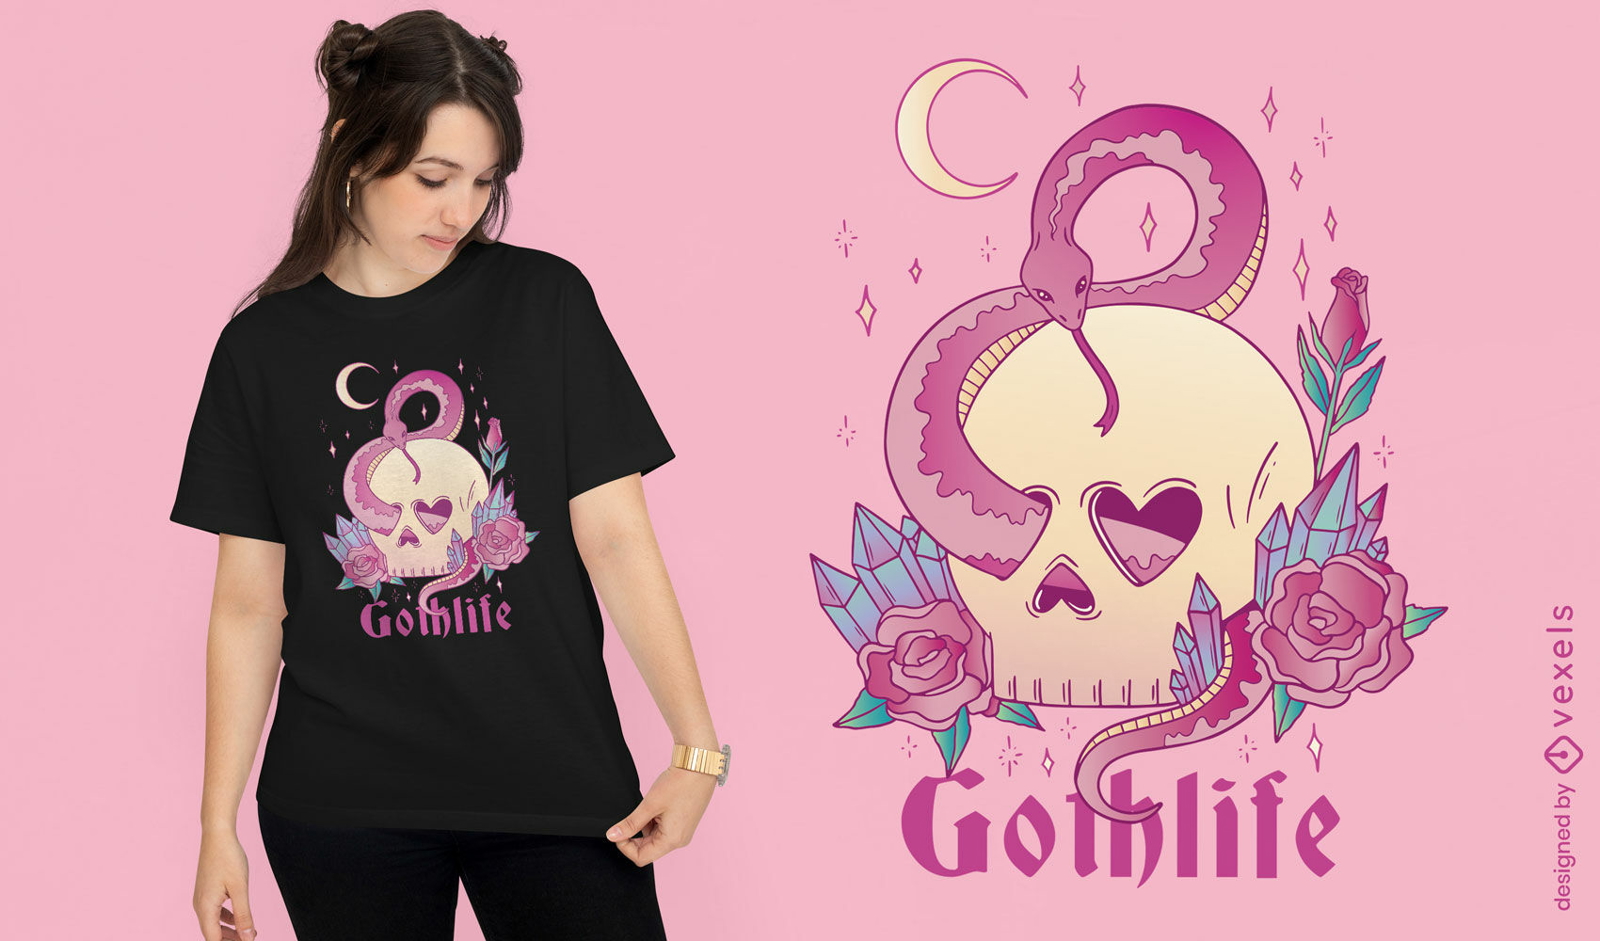 Pastell-Gothic-Schädel und Schlangen-T-Shirt-Design